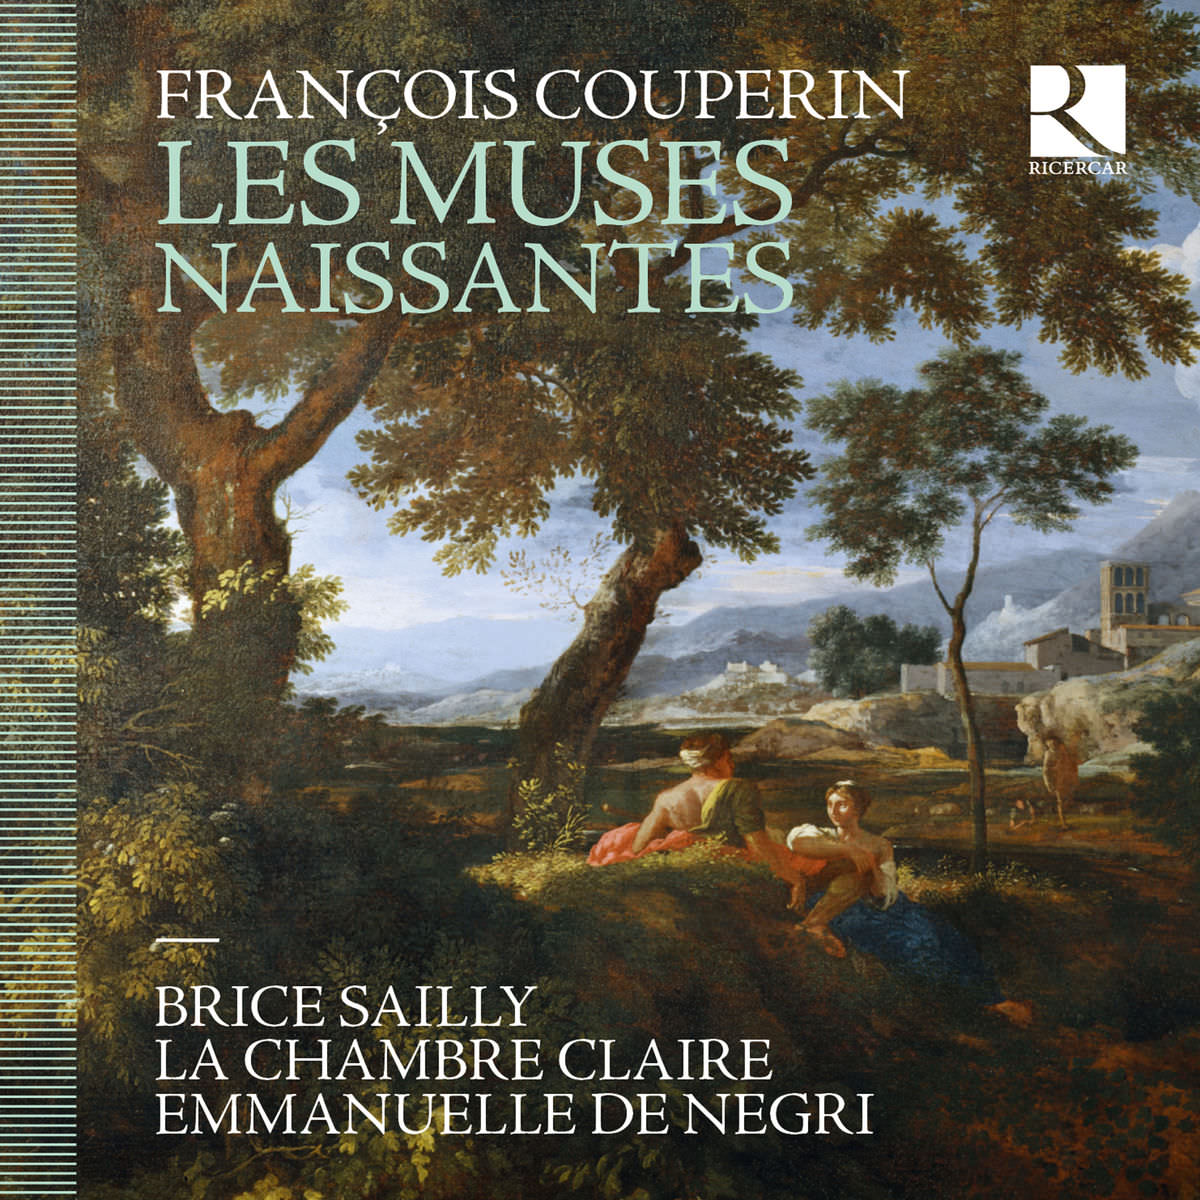 Brice Sailly, La chambre claire & Emmanuelle De Negri – François Couperin: Les muses naissantes (2018) [FLAC 24bit/44,1kHz]